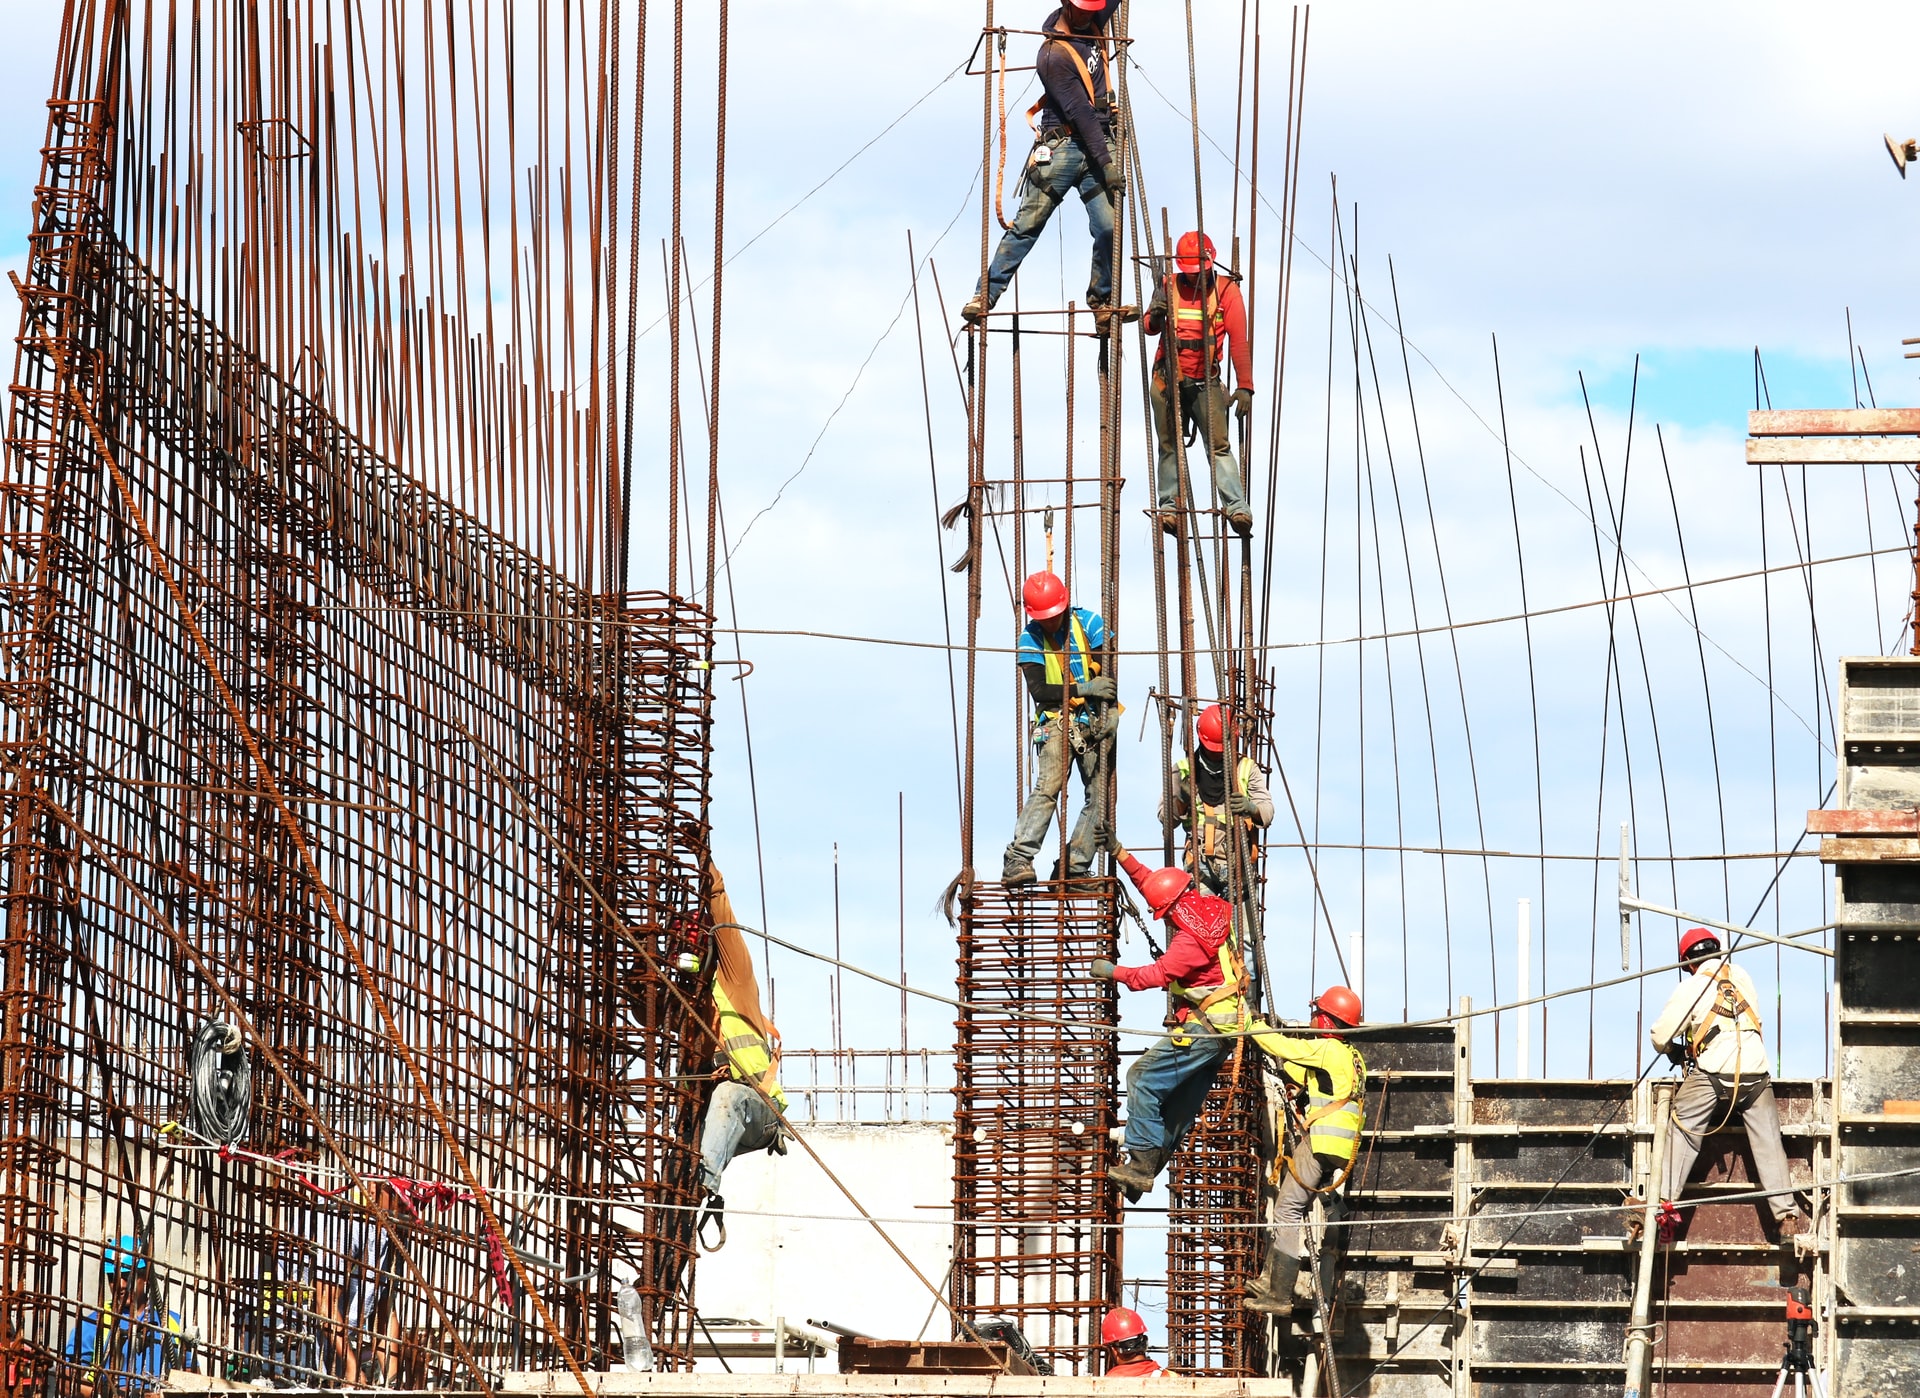 Masalah Ketenagakerjaan Di Indonesia dan Upaya Mengatasinya